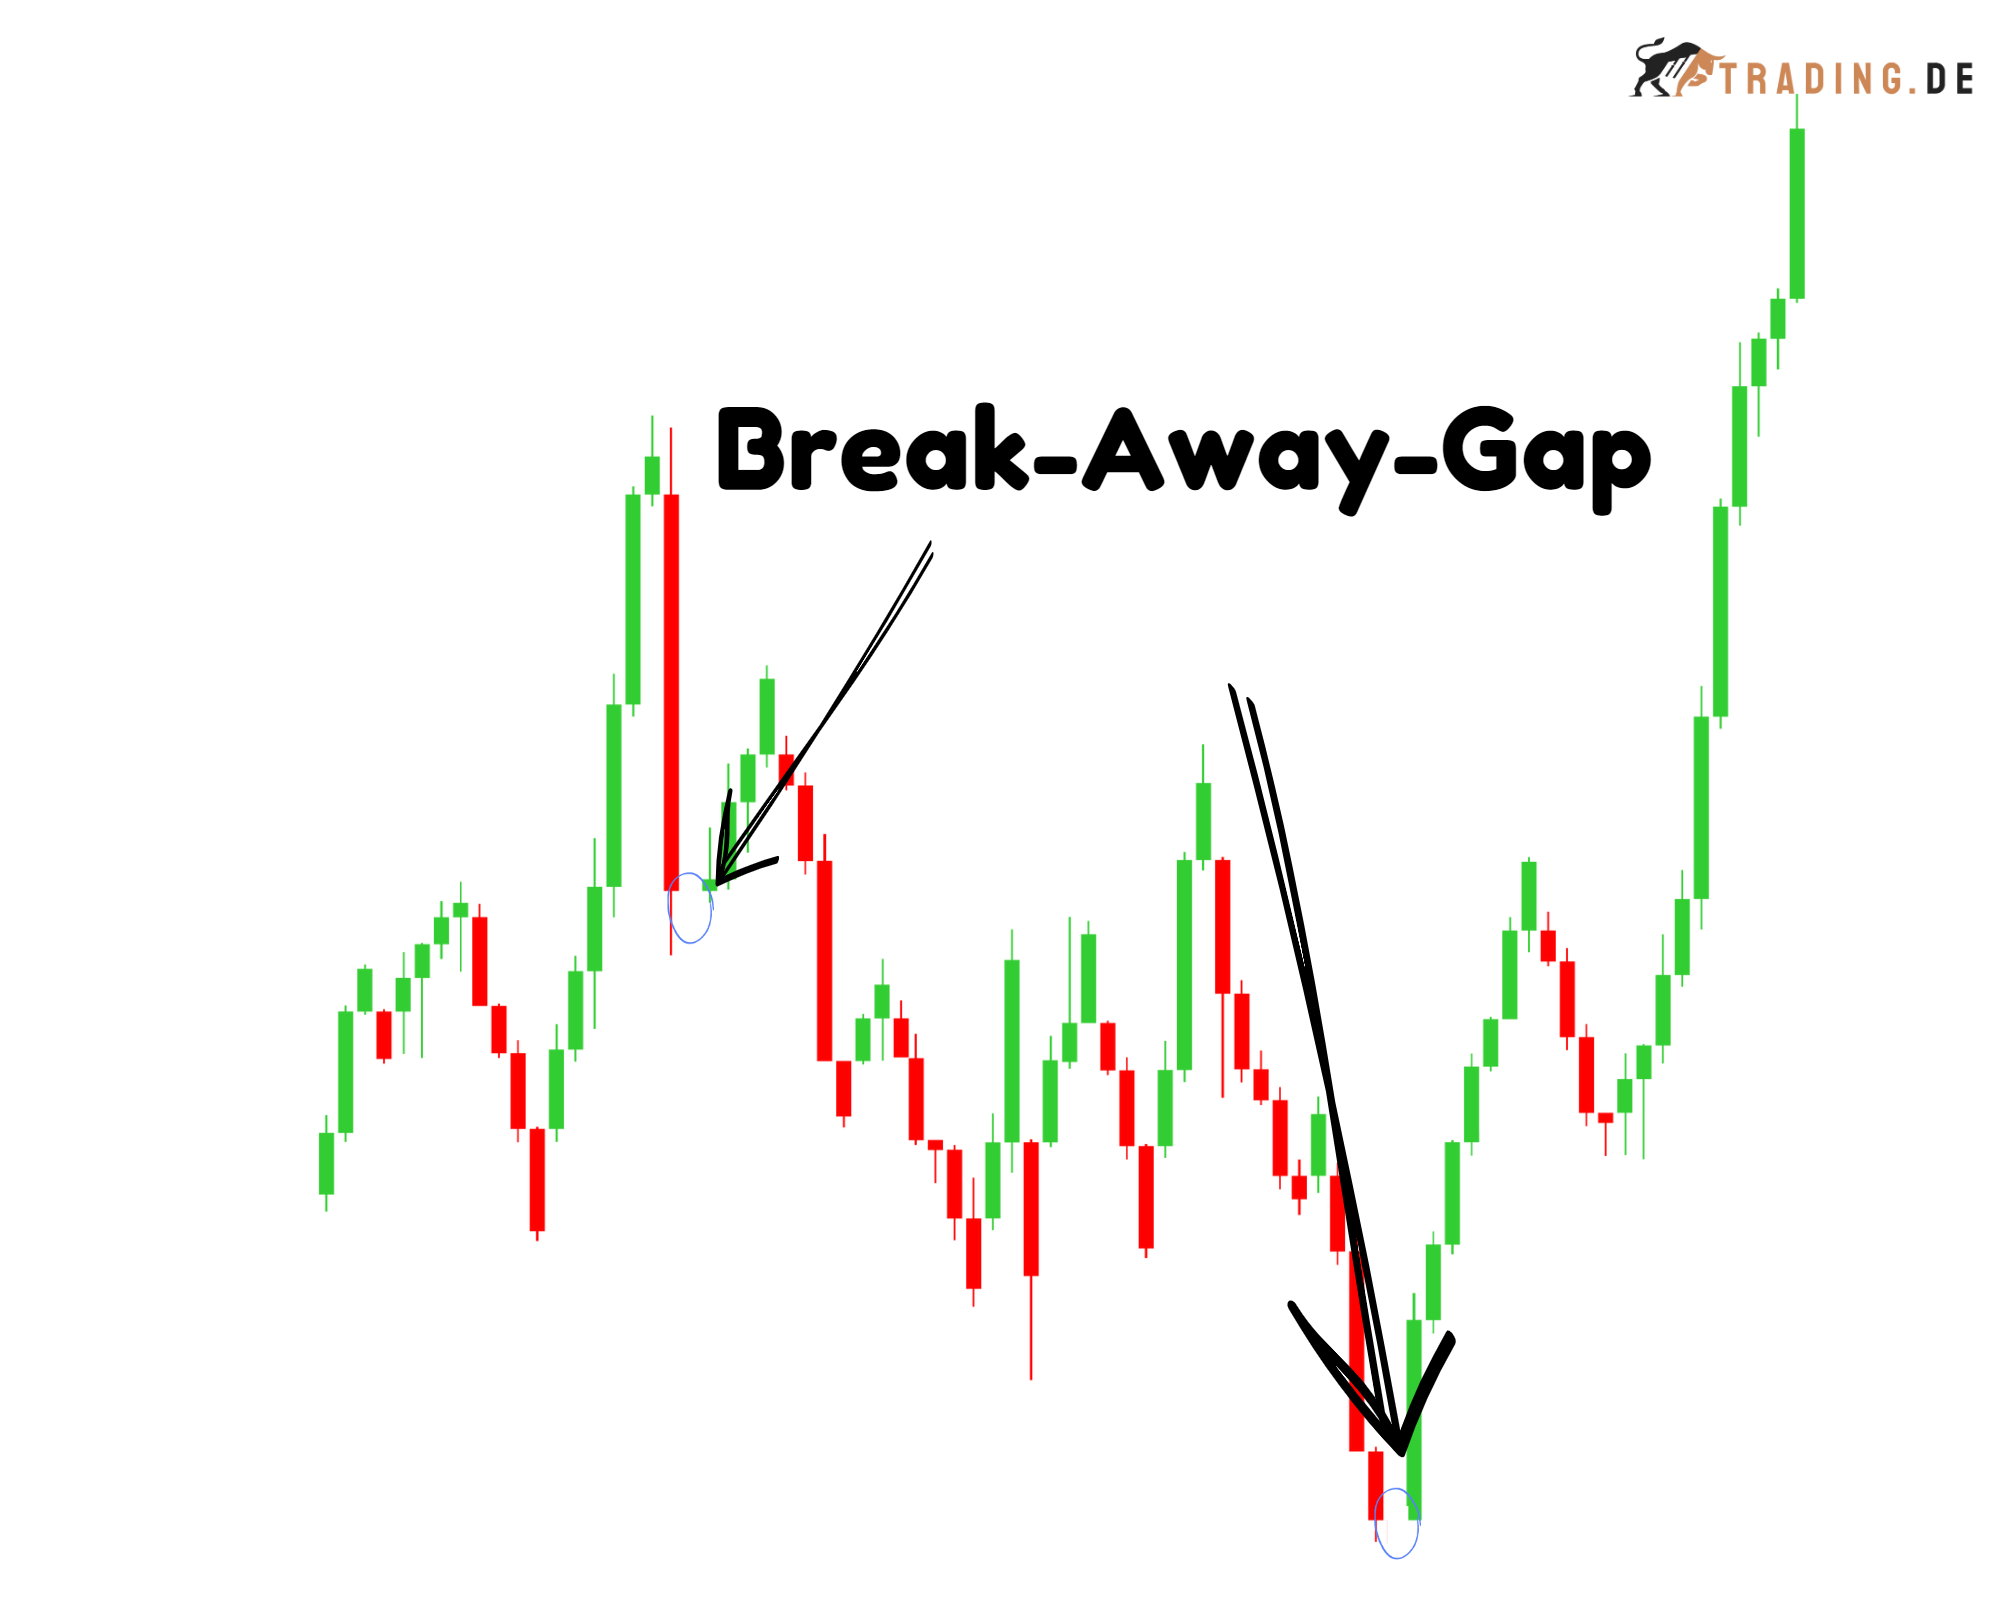 Break-Away-Gap